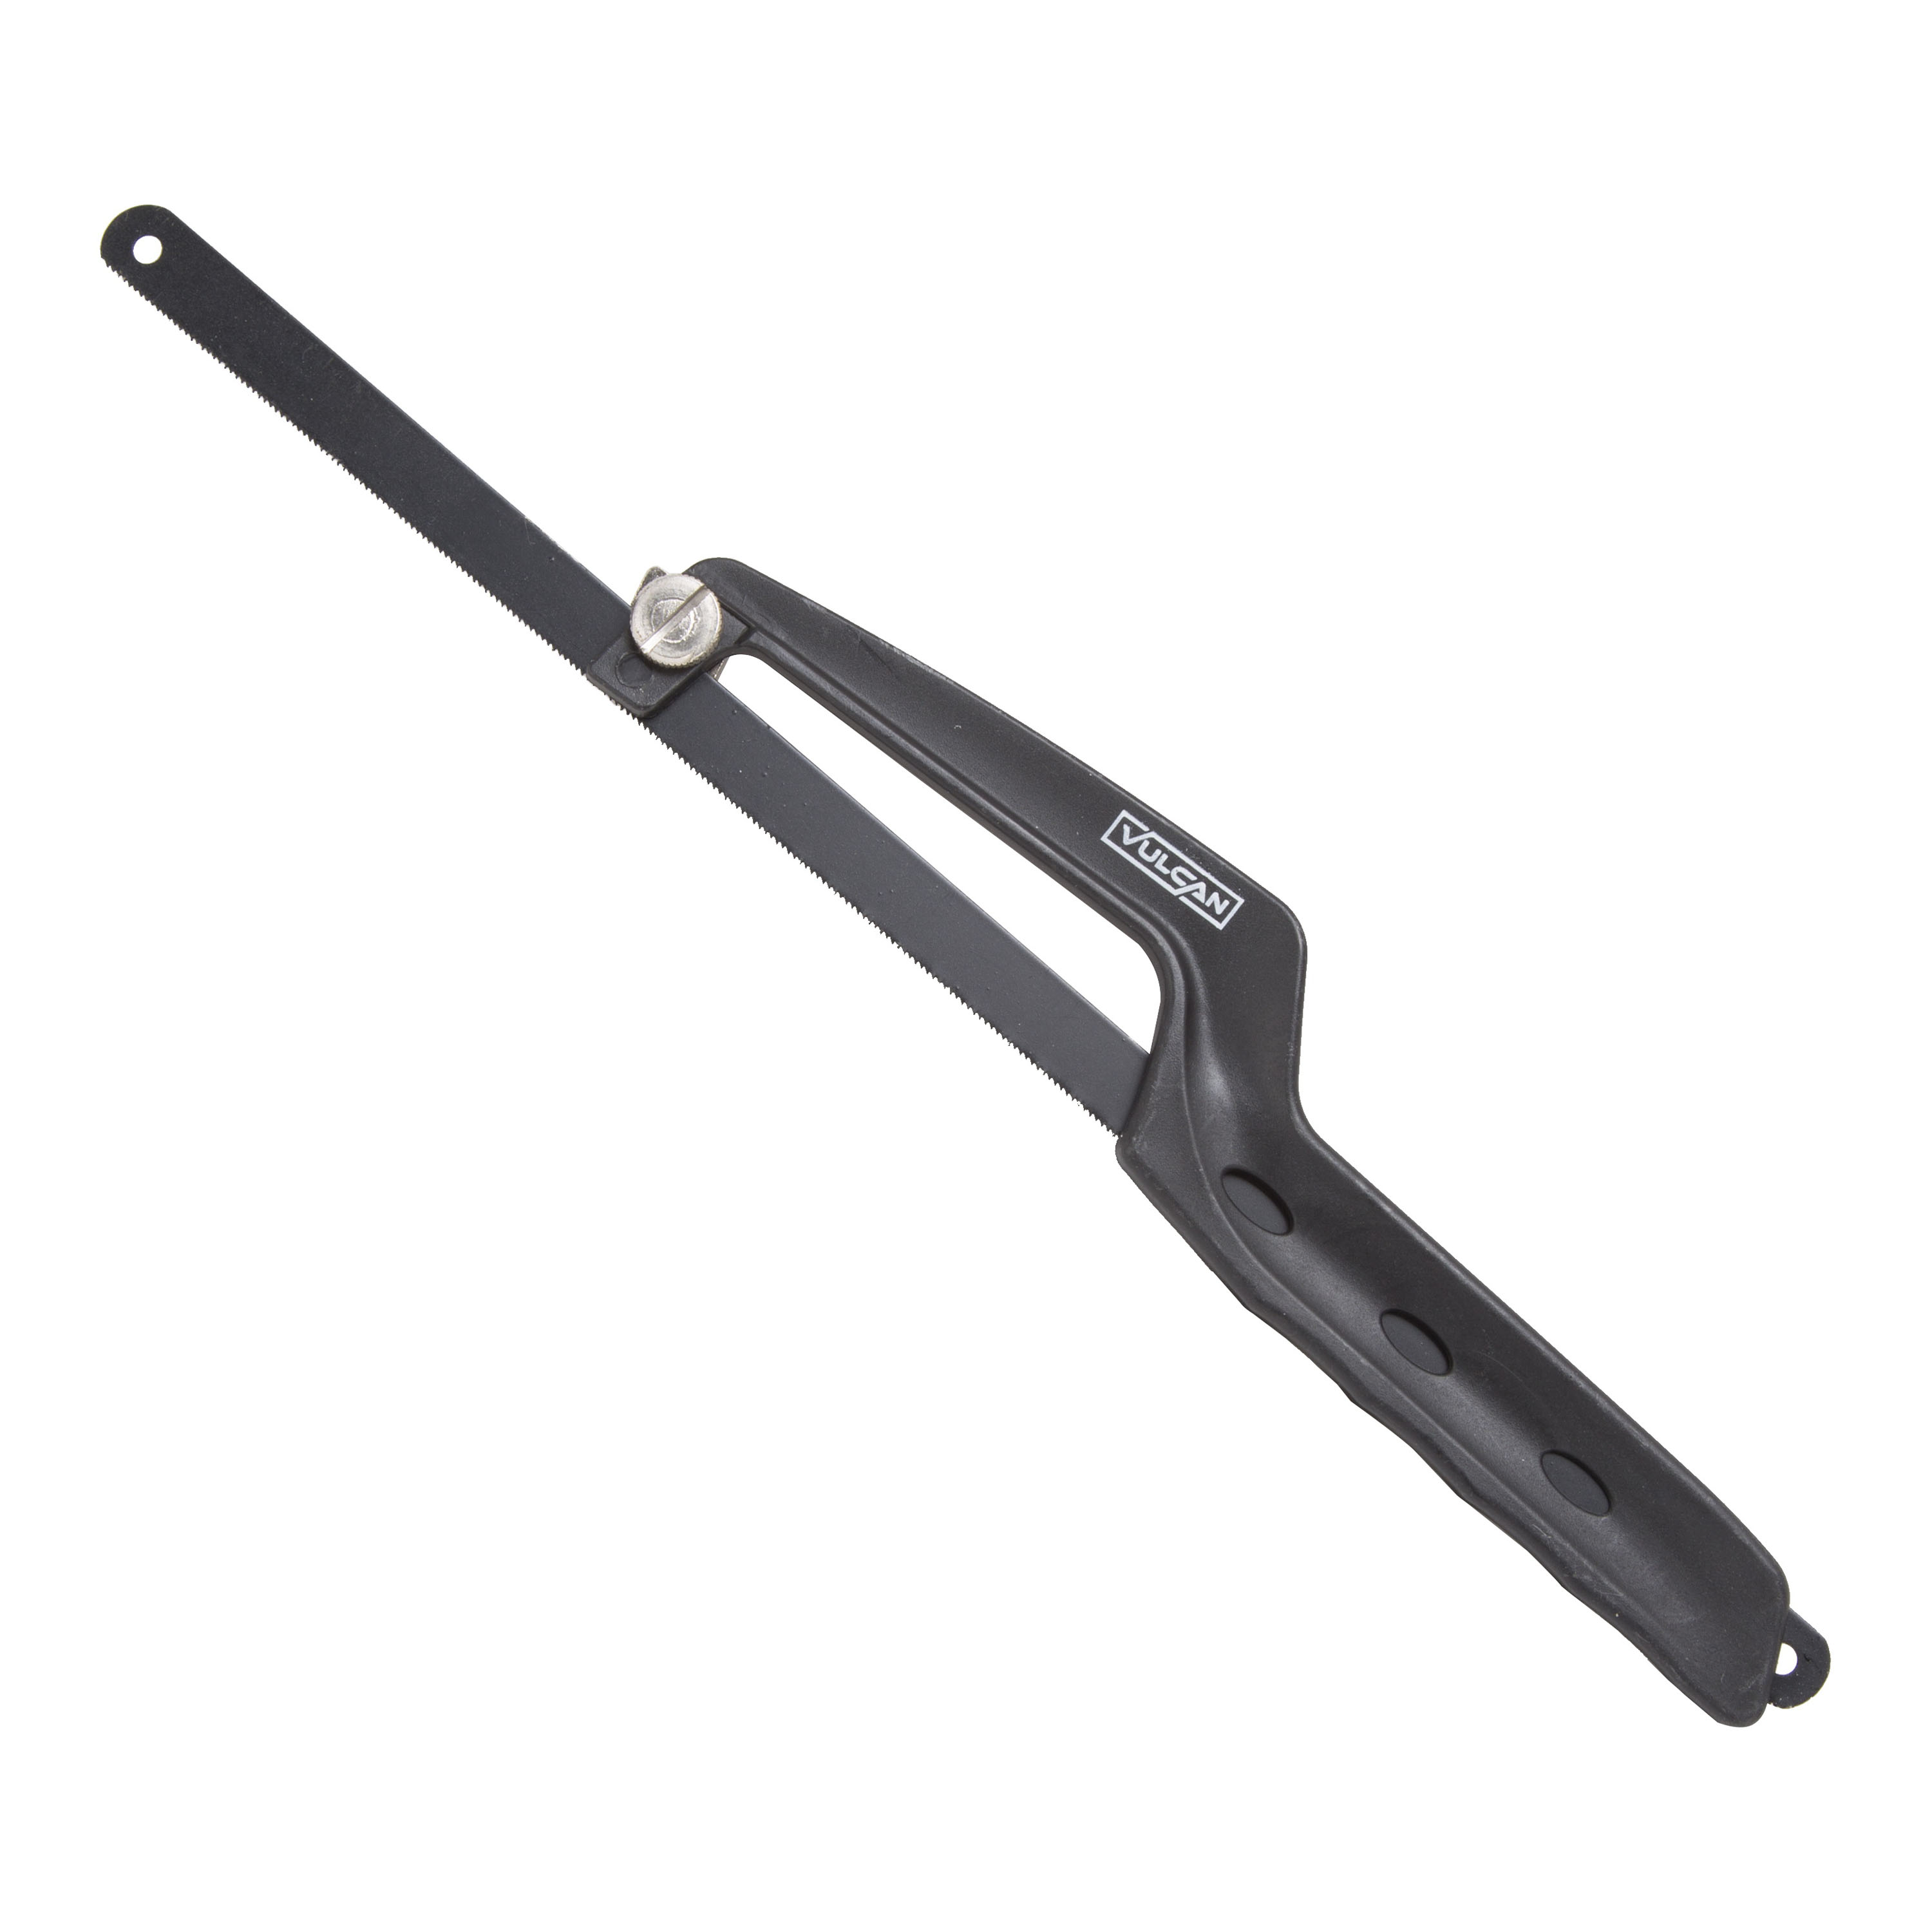 JLO-002 Hacksaw, 12 in L Blade, 24 TPI, Steel Blade, Plastic Frame, Plastic Handle